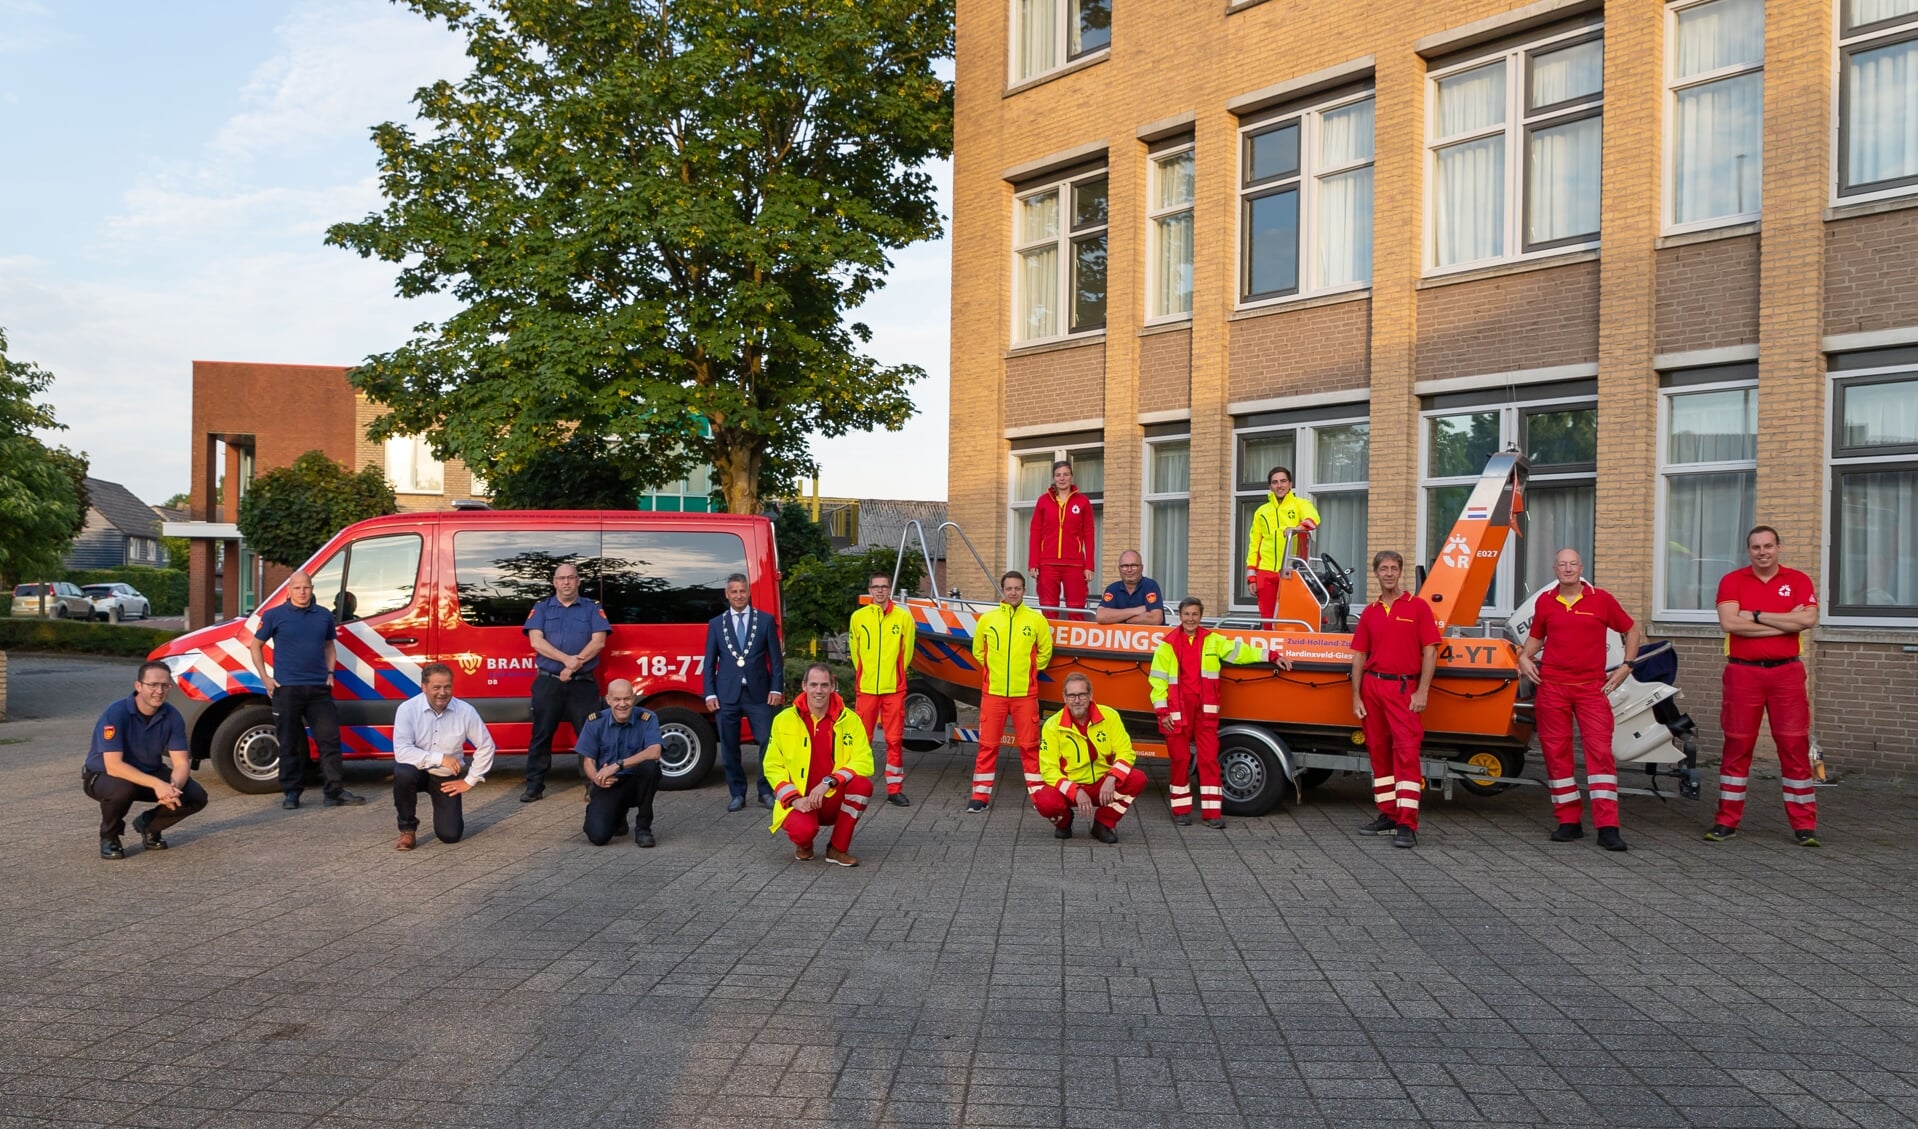 De reddingsbrigade samen met de brandweer bij het gemeentehuis waar ze werden bedankt voor hun inzet tijdens de overstromingen in Zuid-Limburg.